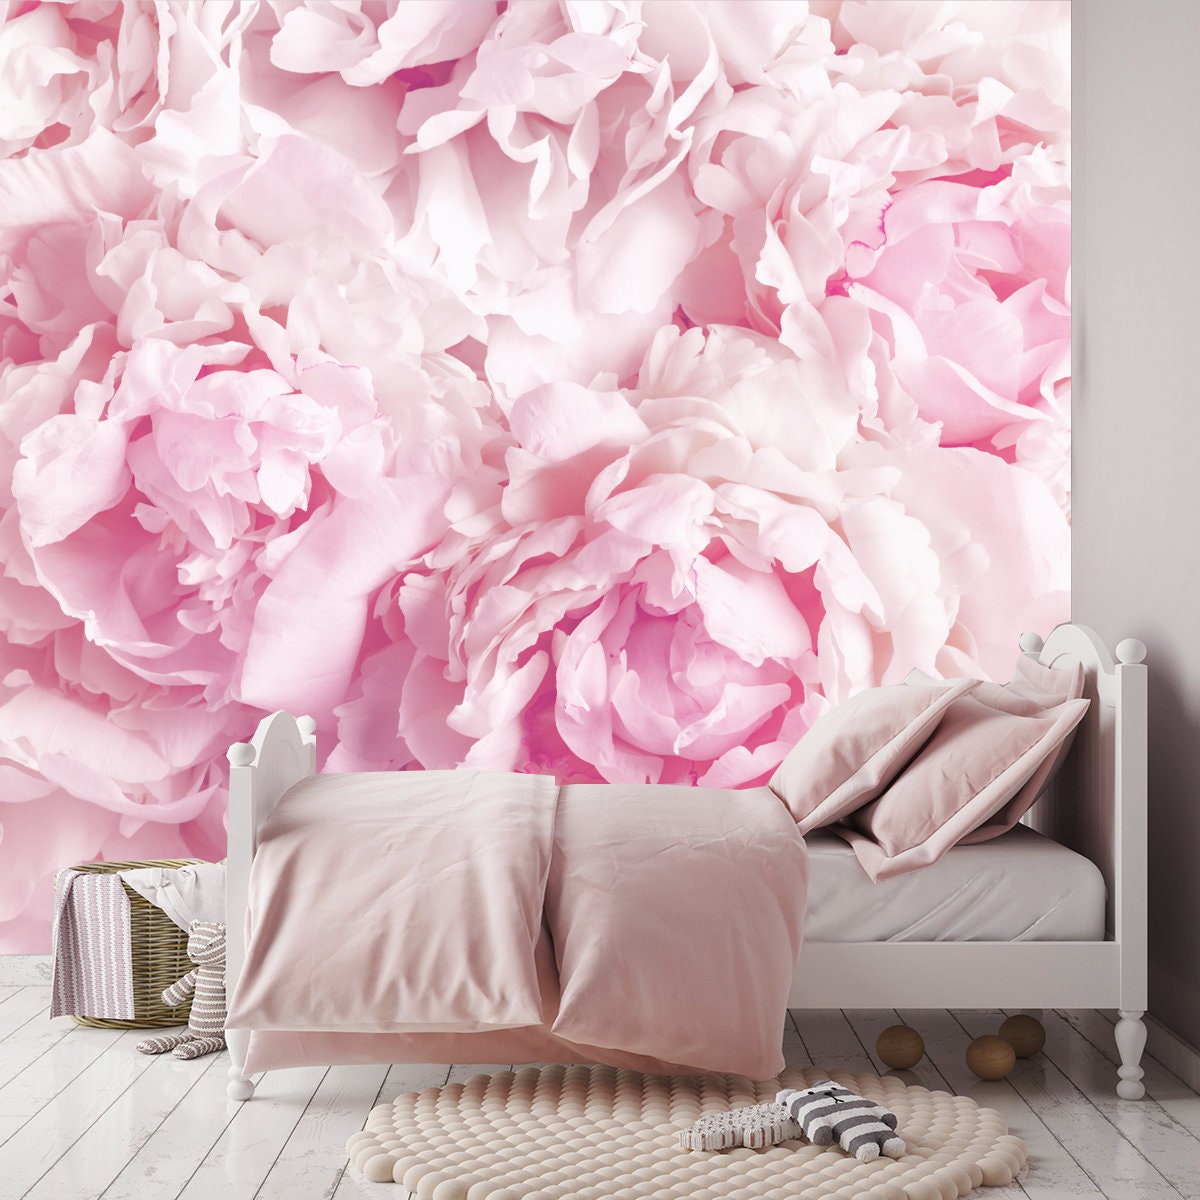 Beautiful Floral Background from Pink Peonies. Tender Flower Petals in Vintage Tone Wallpaper Girl Bedroom Mural